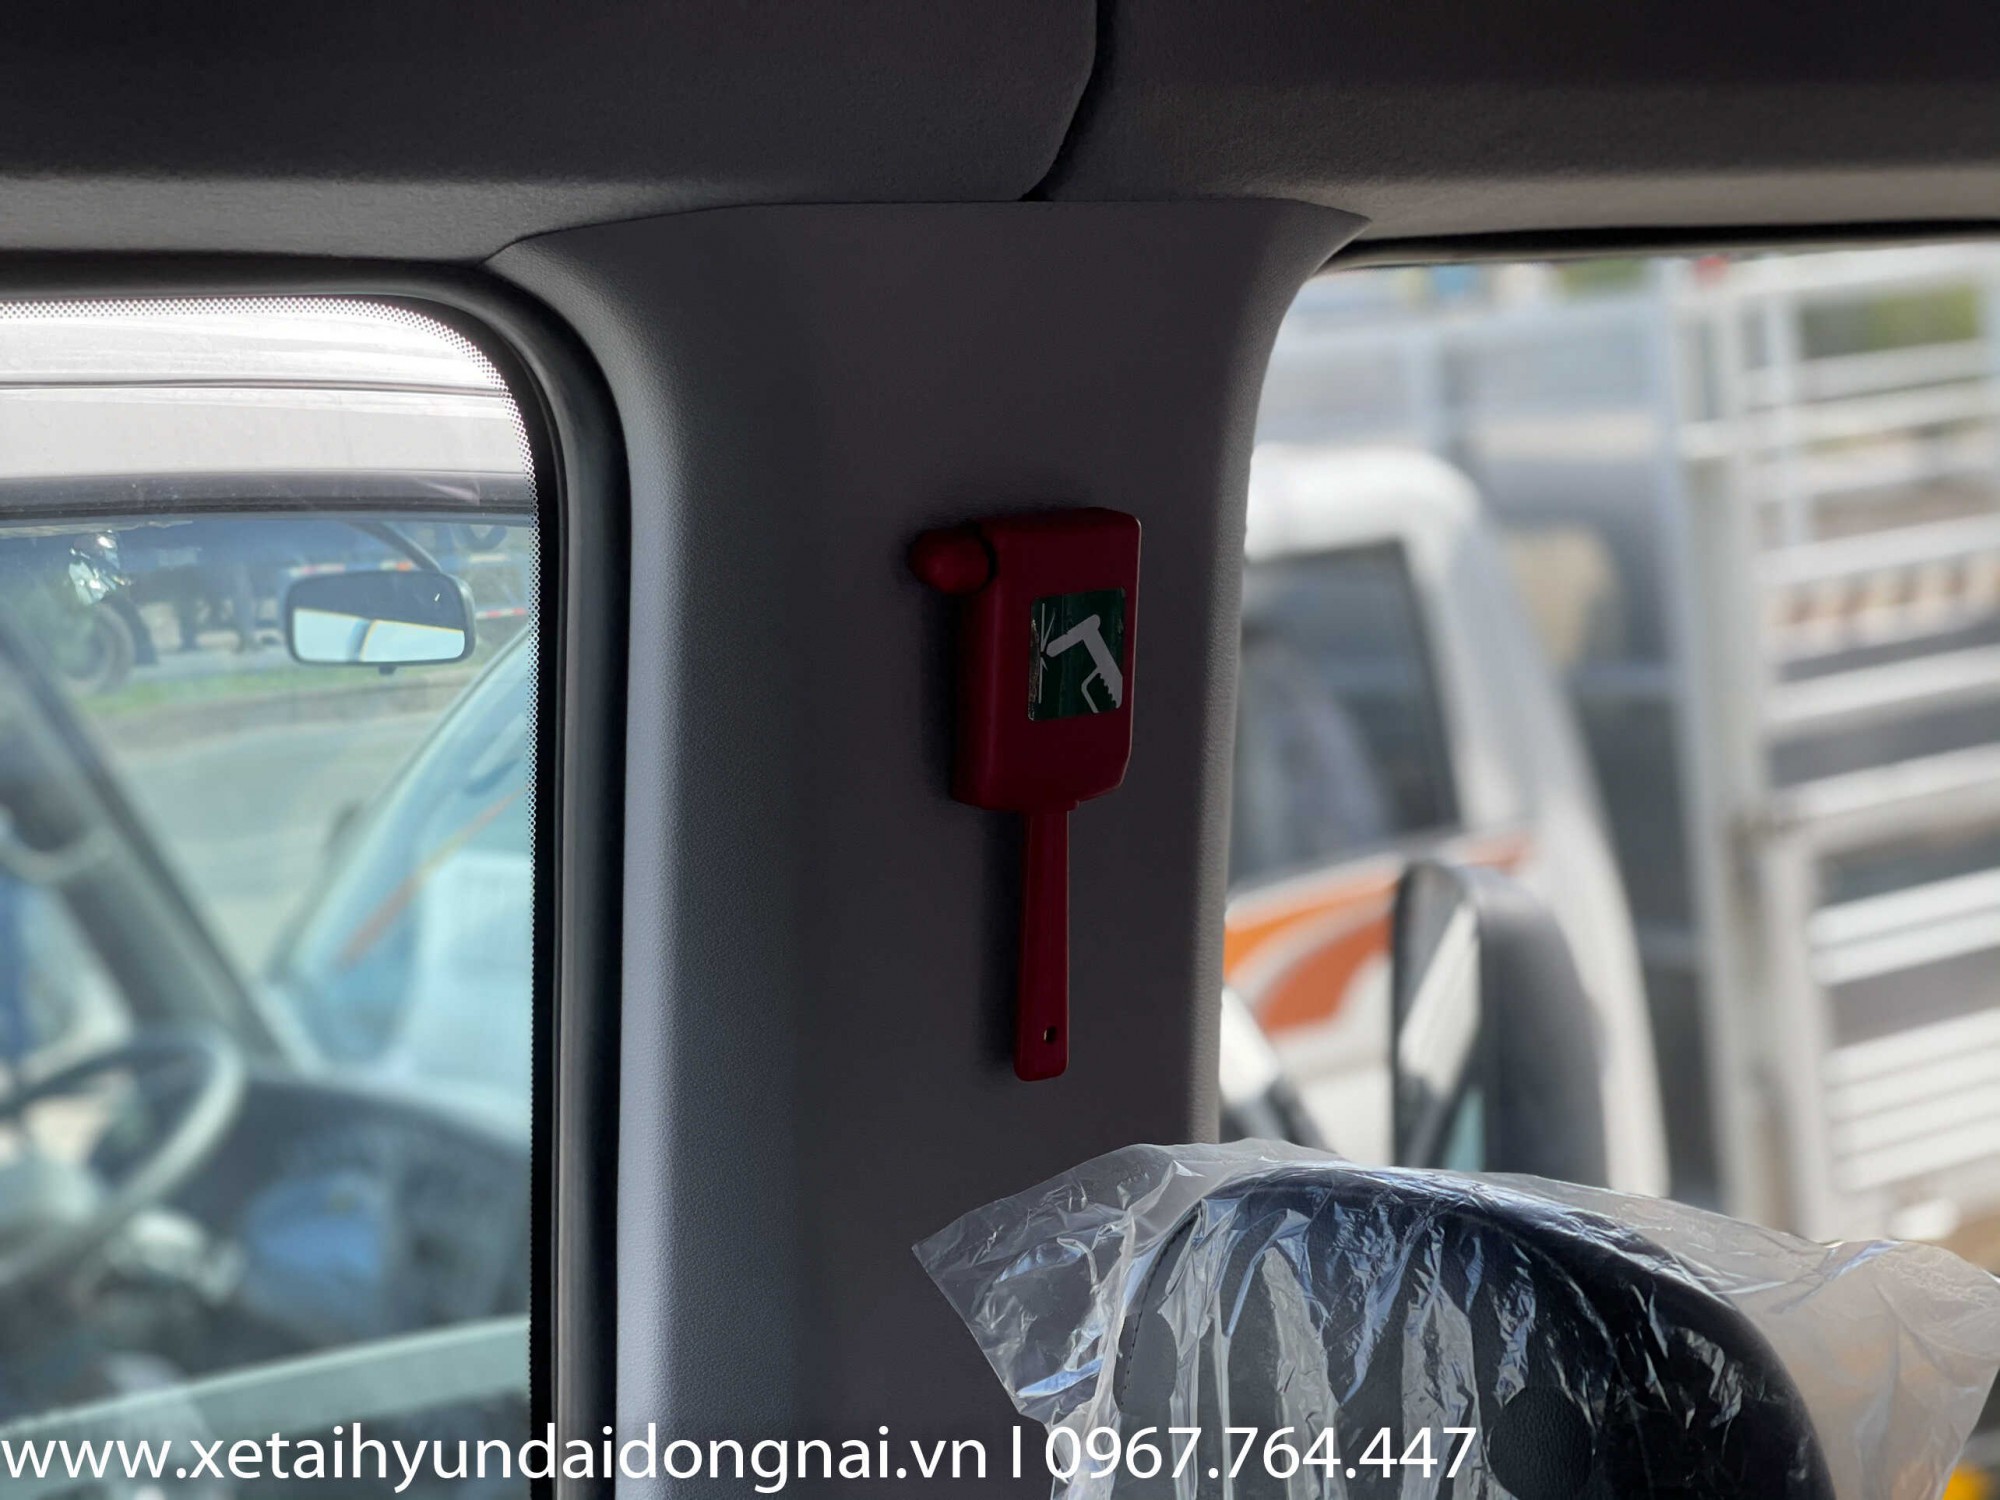 Búa thoát hiểm được trang bị sẵn, đảm bảo tính năng an toàn trong xe Hyundai Solati